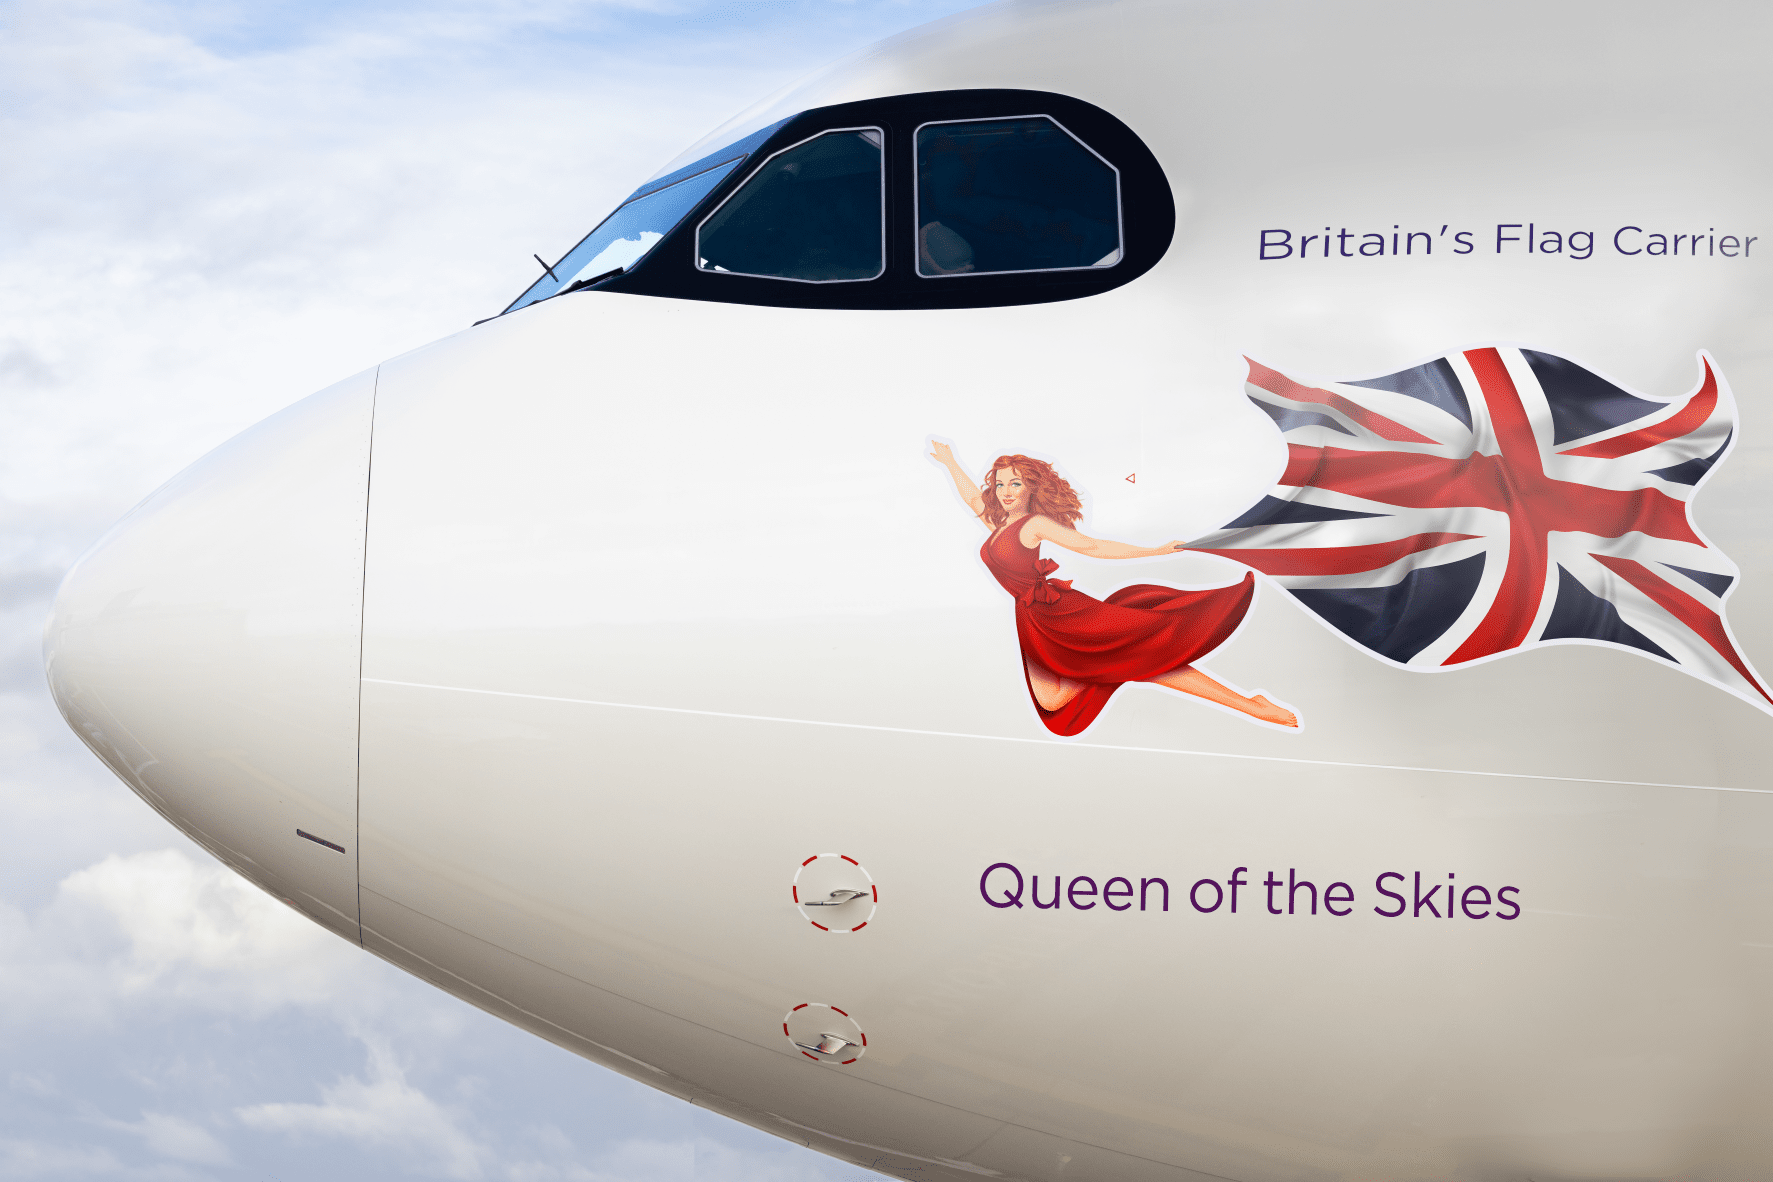 Virgin Atlantic Reveals New ‘Queen of the Skies’ in Honor of Elizabeth II